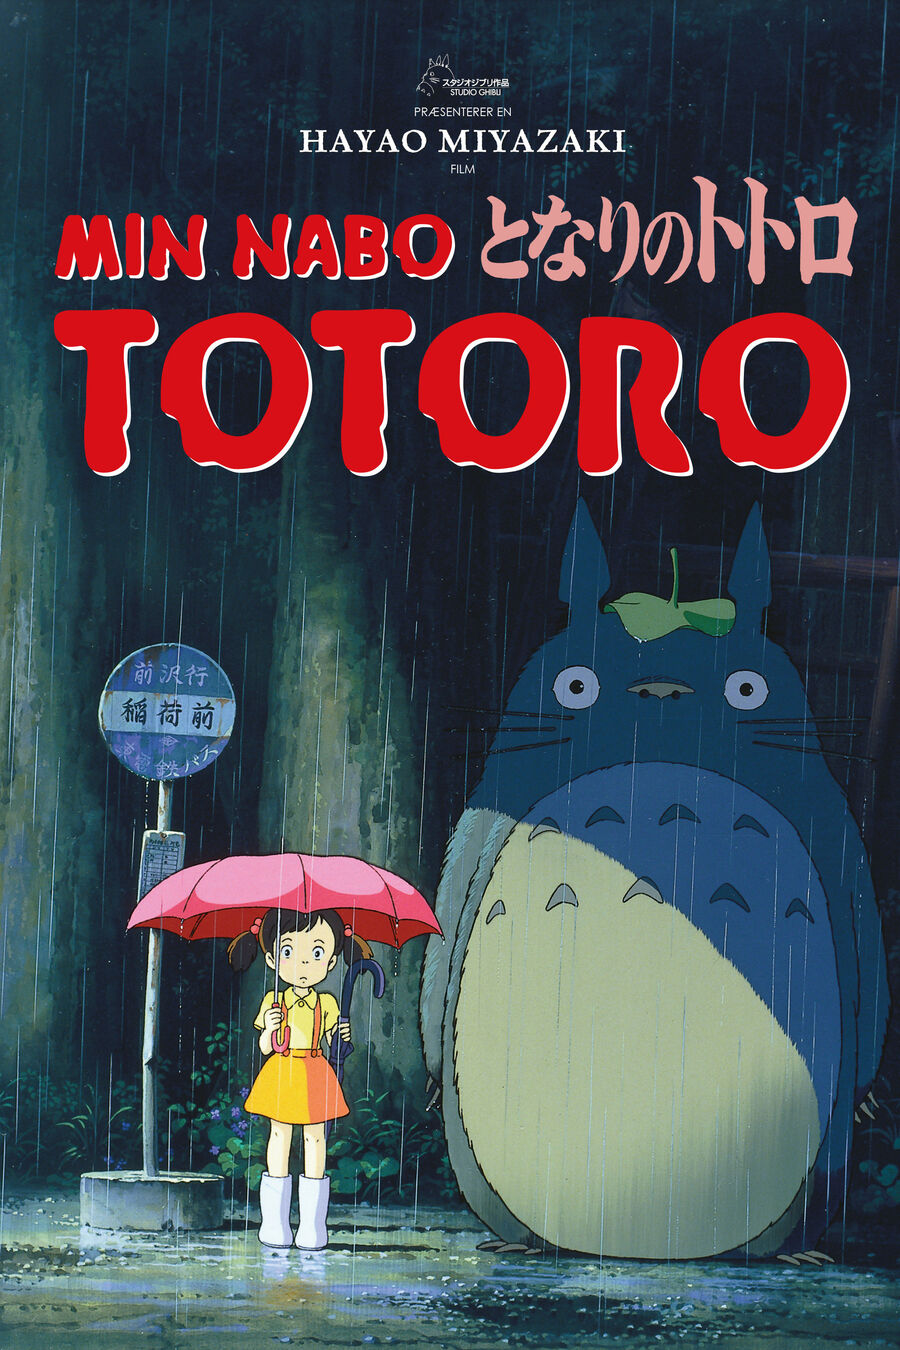 Billede fra filmen Totoro